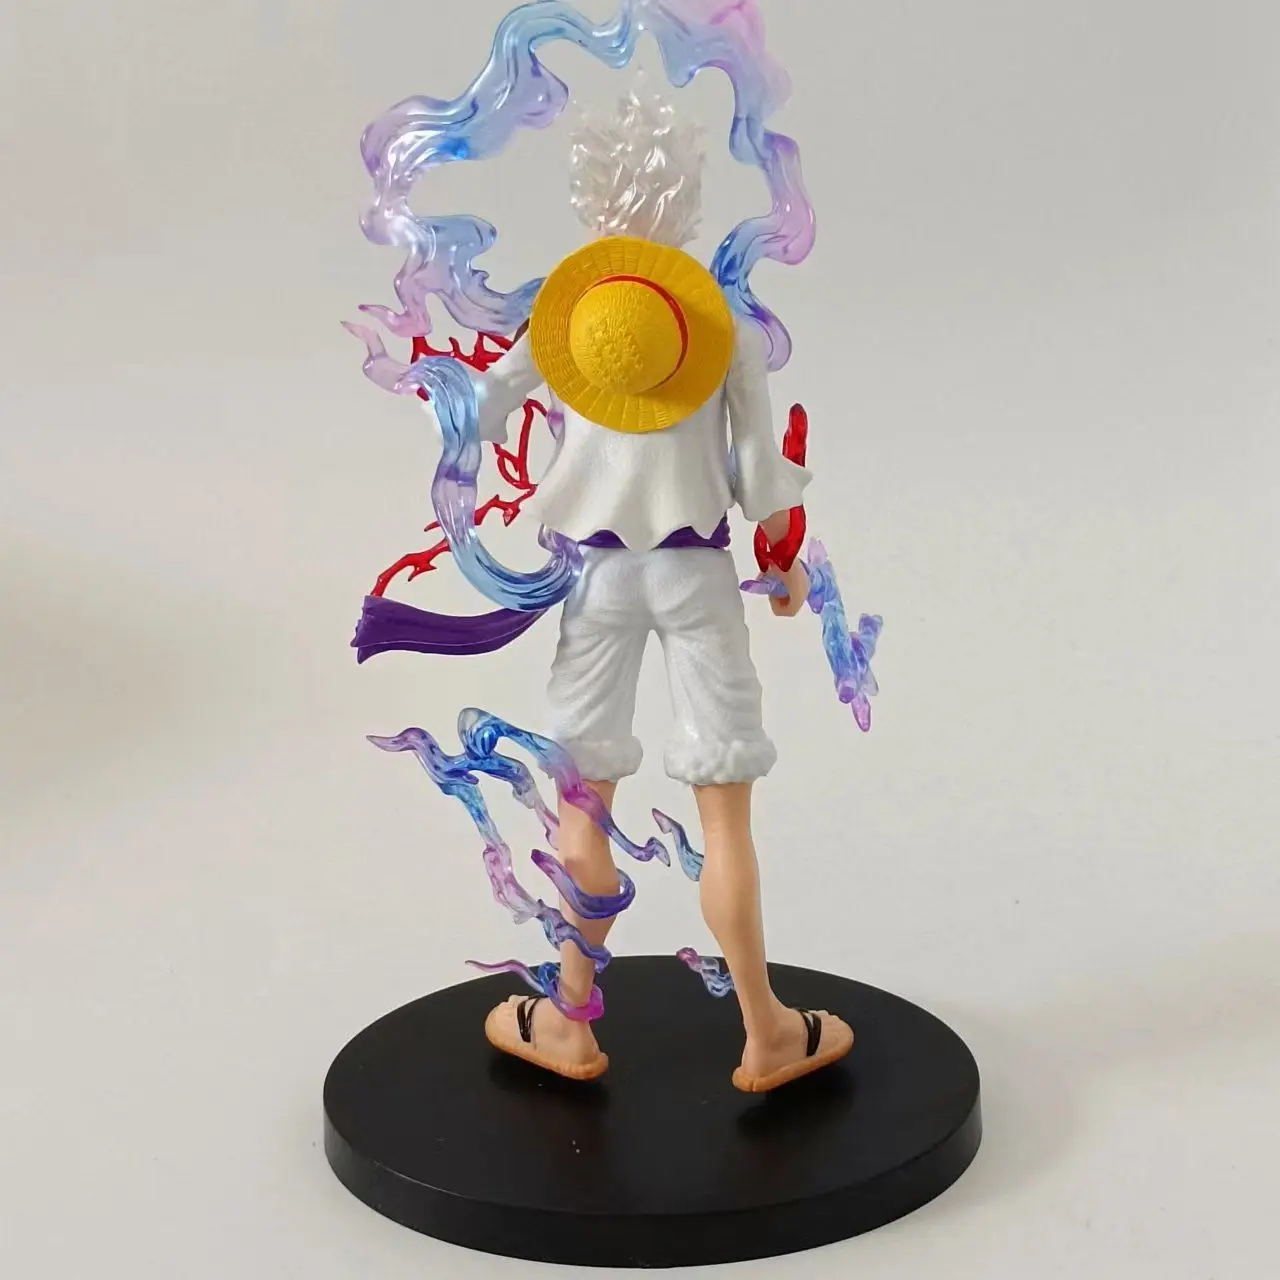 Mô Hình Anime One Piece Joy Boy: Bạn là fan của One Piece và đang tìm kiếm một mô hình đẹp để trang trí cho phòng của mình? Mô hình Anime One Piece Joy Boy chính là lựa chọn hoàn hảo. Với chi tiết tinh tế và màu sắc chân thật, mô hình này sẽ làm bạn cảm thấy hài lòng và thỏa mãn.